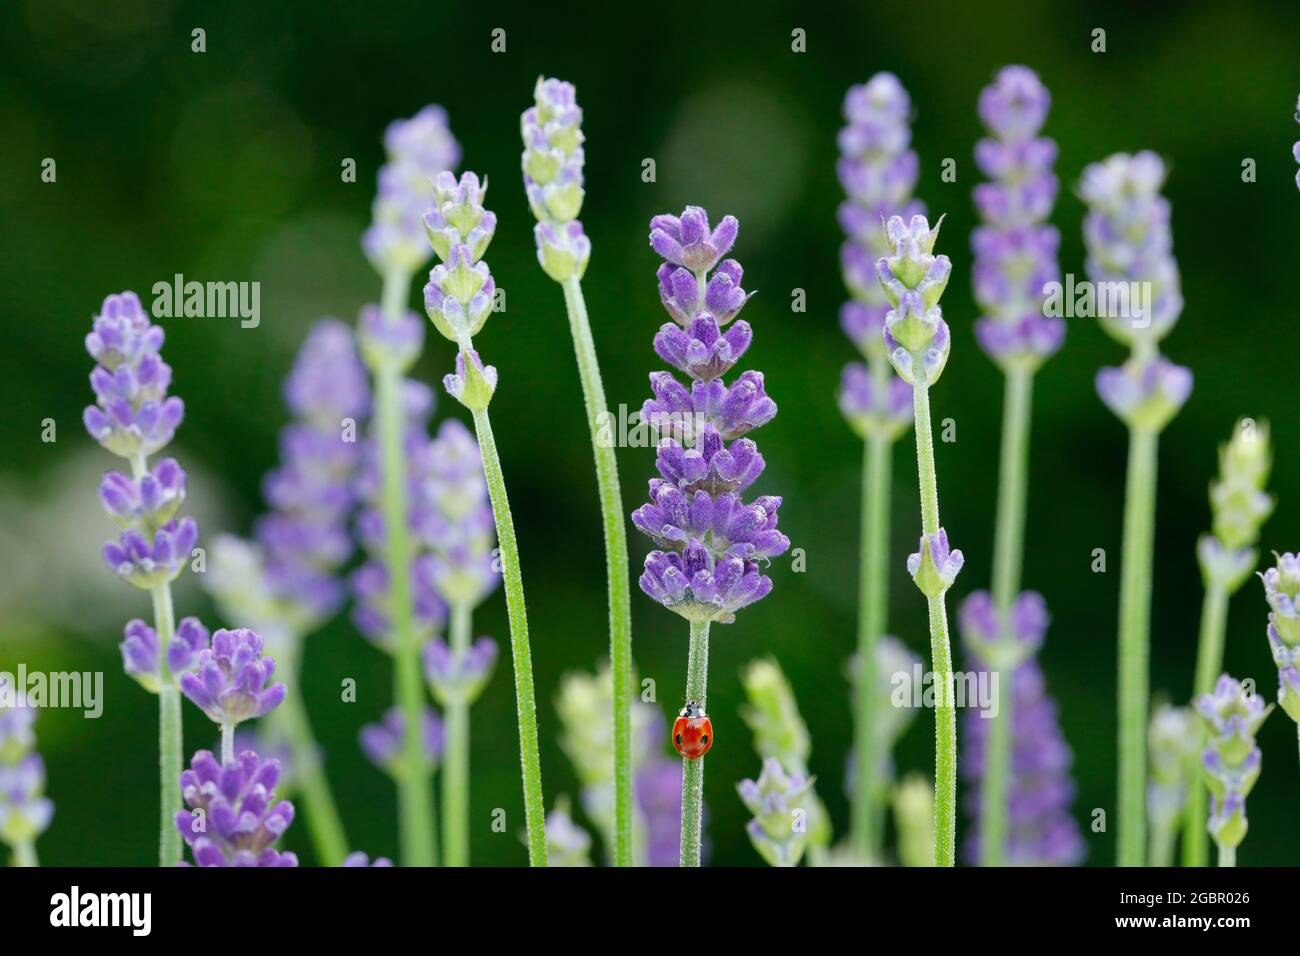 zoologia, insetti (Insecta), ladybird a due punti su fiori di lavanda, Svizzera, NON-USO-ESCLUSIVO PER IL BIGLIETTO-BIGLIETTO-DI-AUGURI-PIEGHEVOLE-USO-CARTOLINA Foto Stock